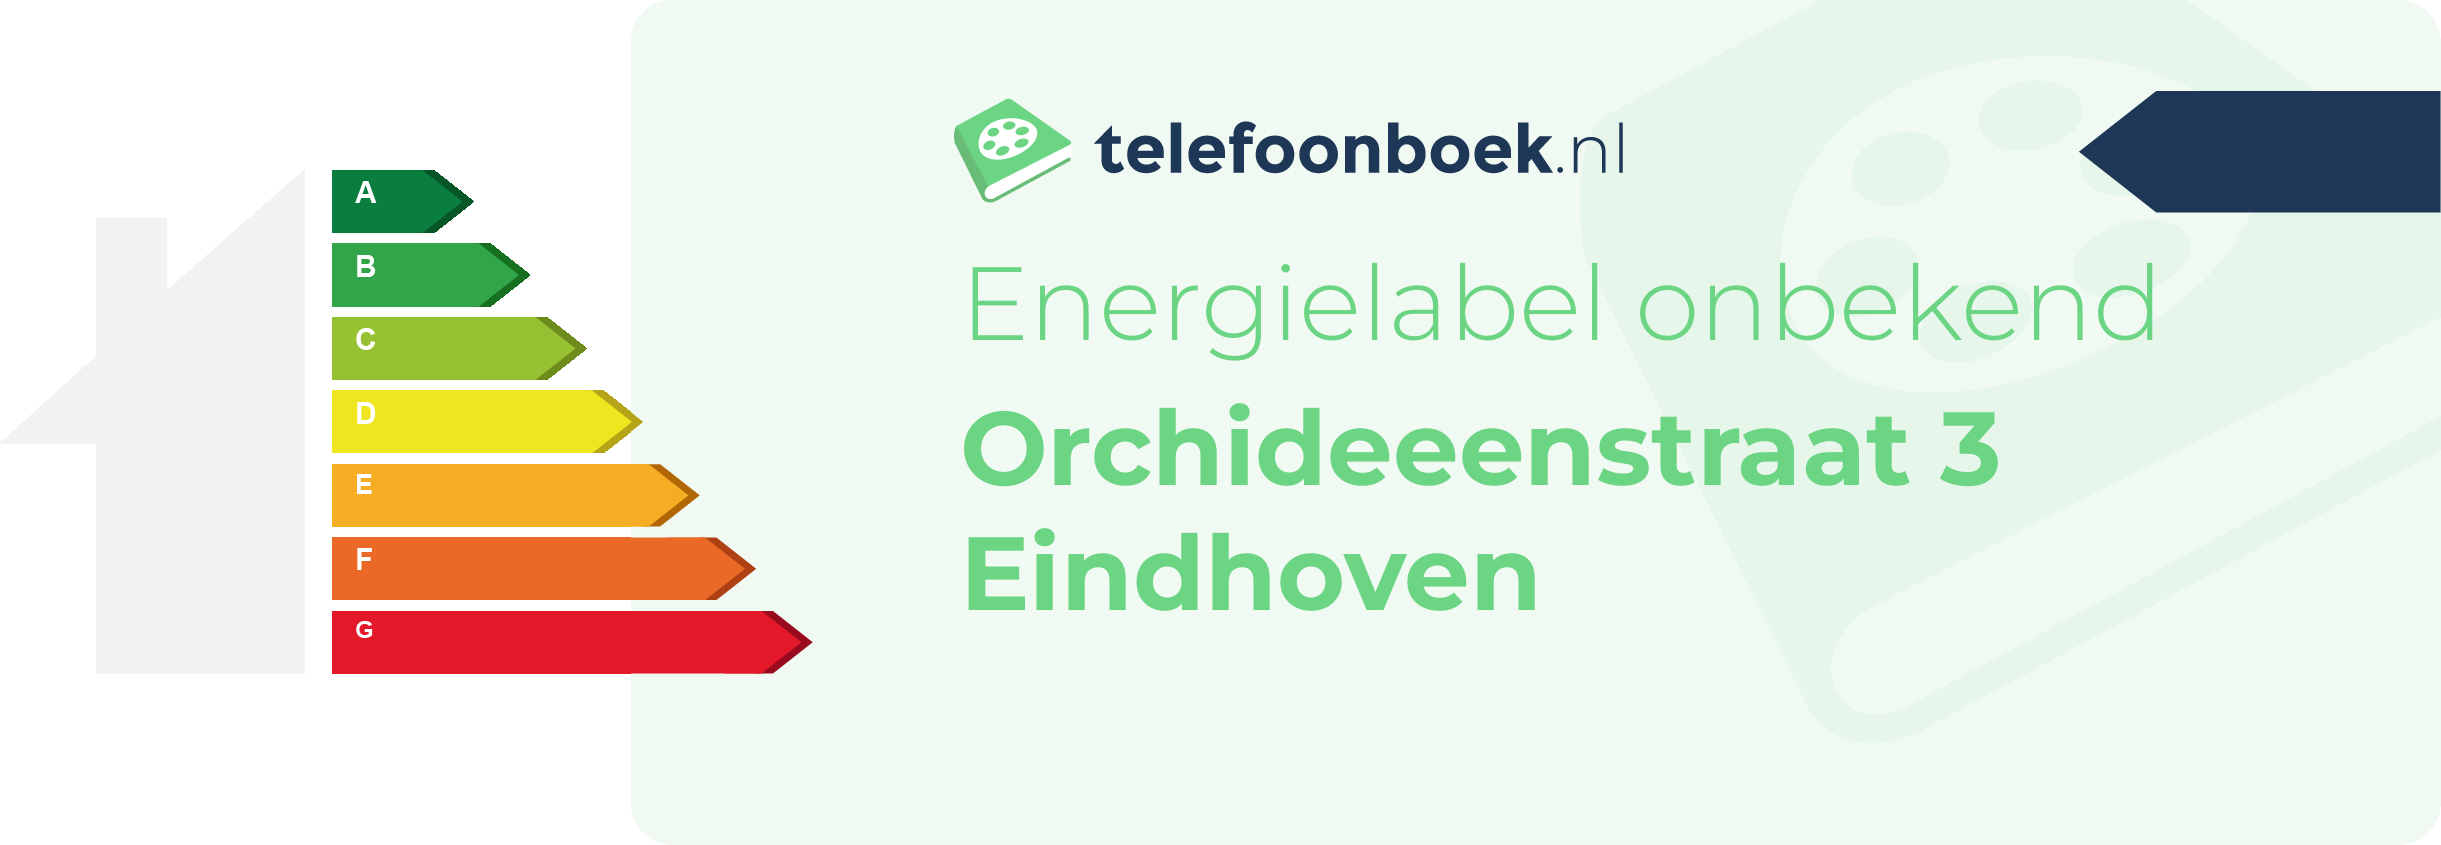 Energielabel Orchideeenstraat 3 Eindhoven